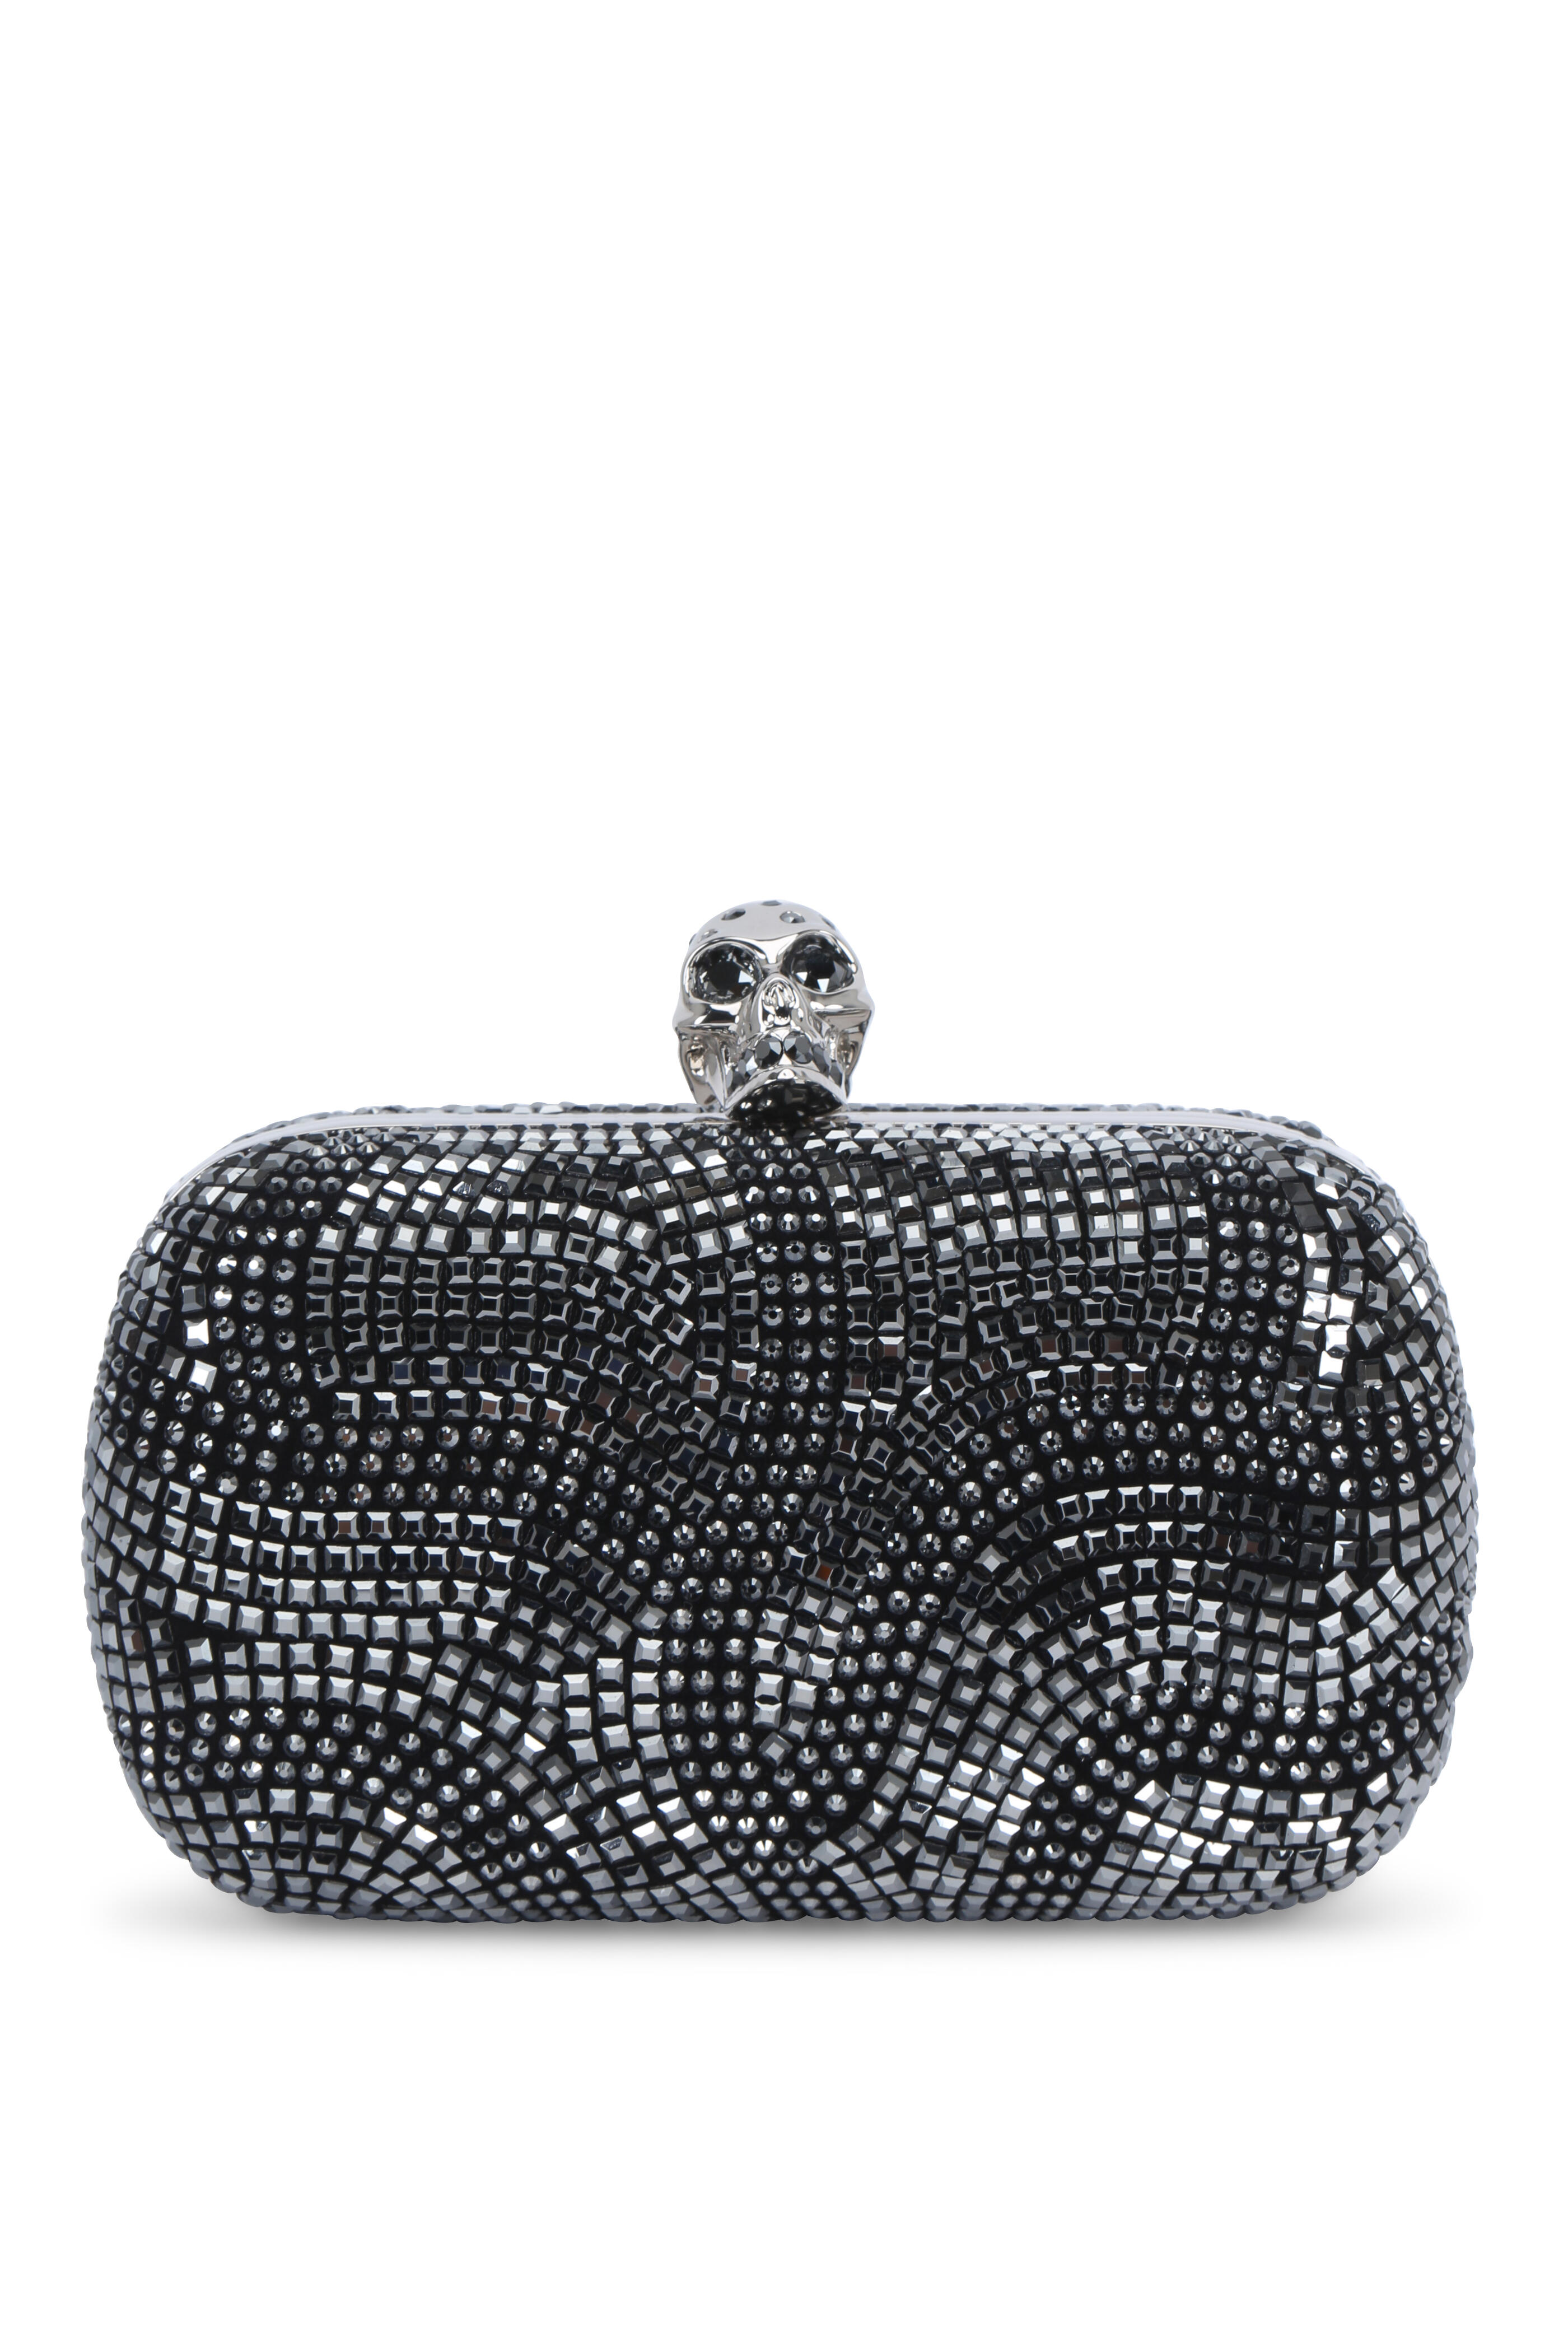 Judith Leiber Crystal-Embellished Skull Clutch Bag